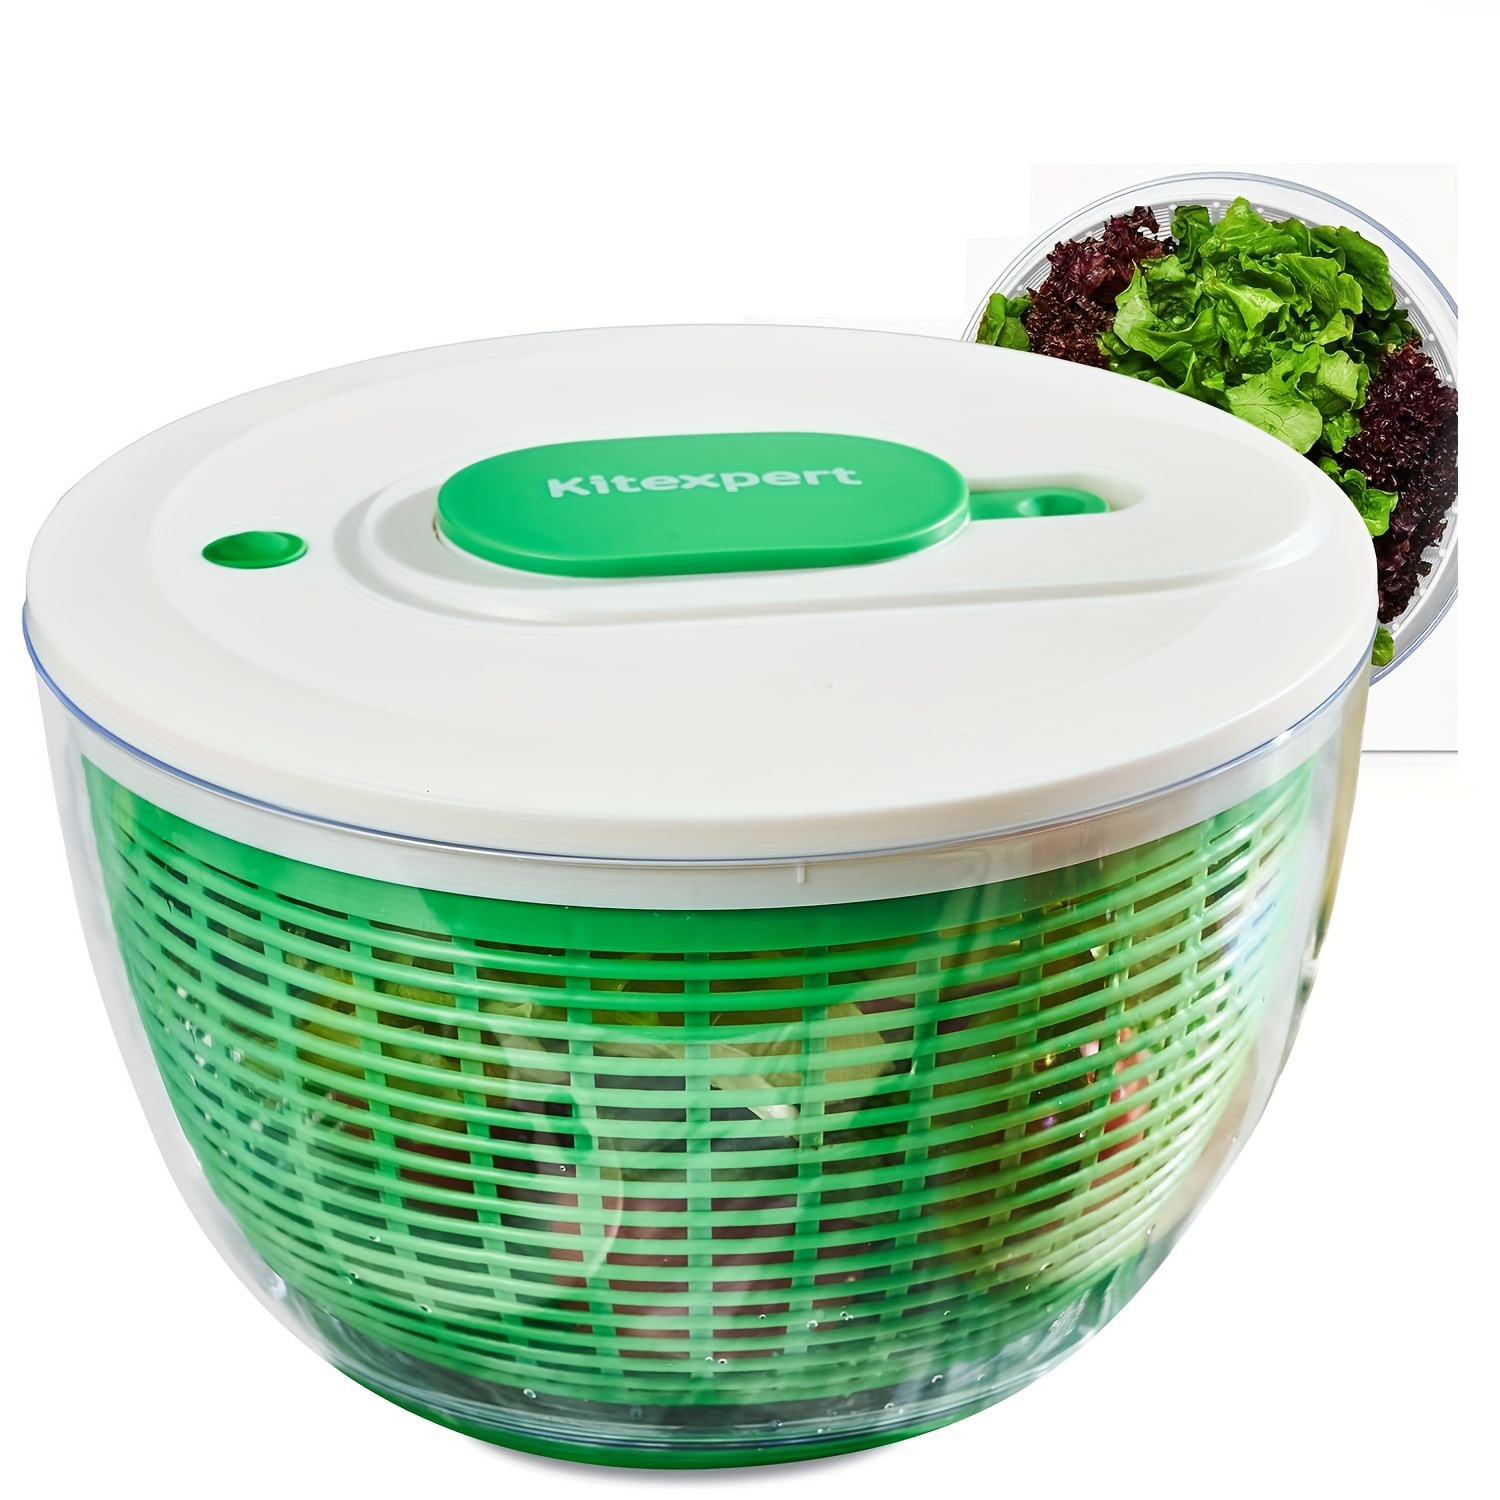 

Kitexpert Salad Spinner Large 6.3 Qt, Manual Lettuce Spinner For Vegetable Prepping, One-handed Pump Fruit Spinner Dryer With Bowl And Colander, Dishwasher Safe Veggie Fruit Washer Spinner